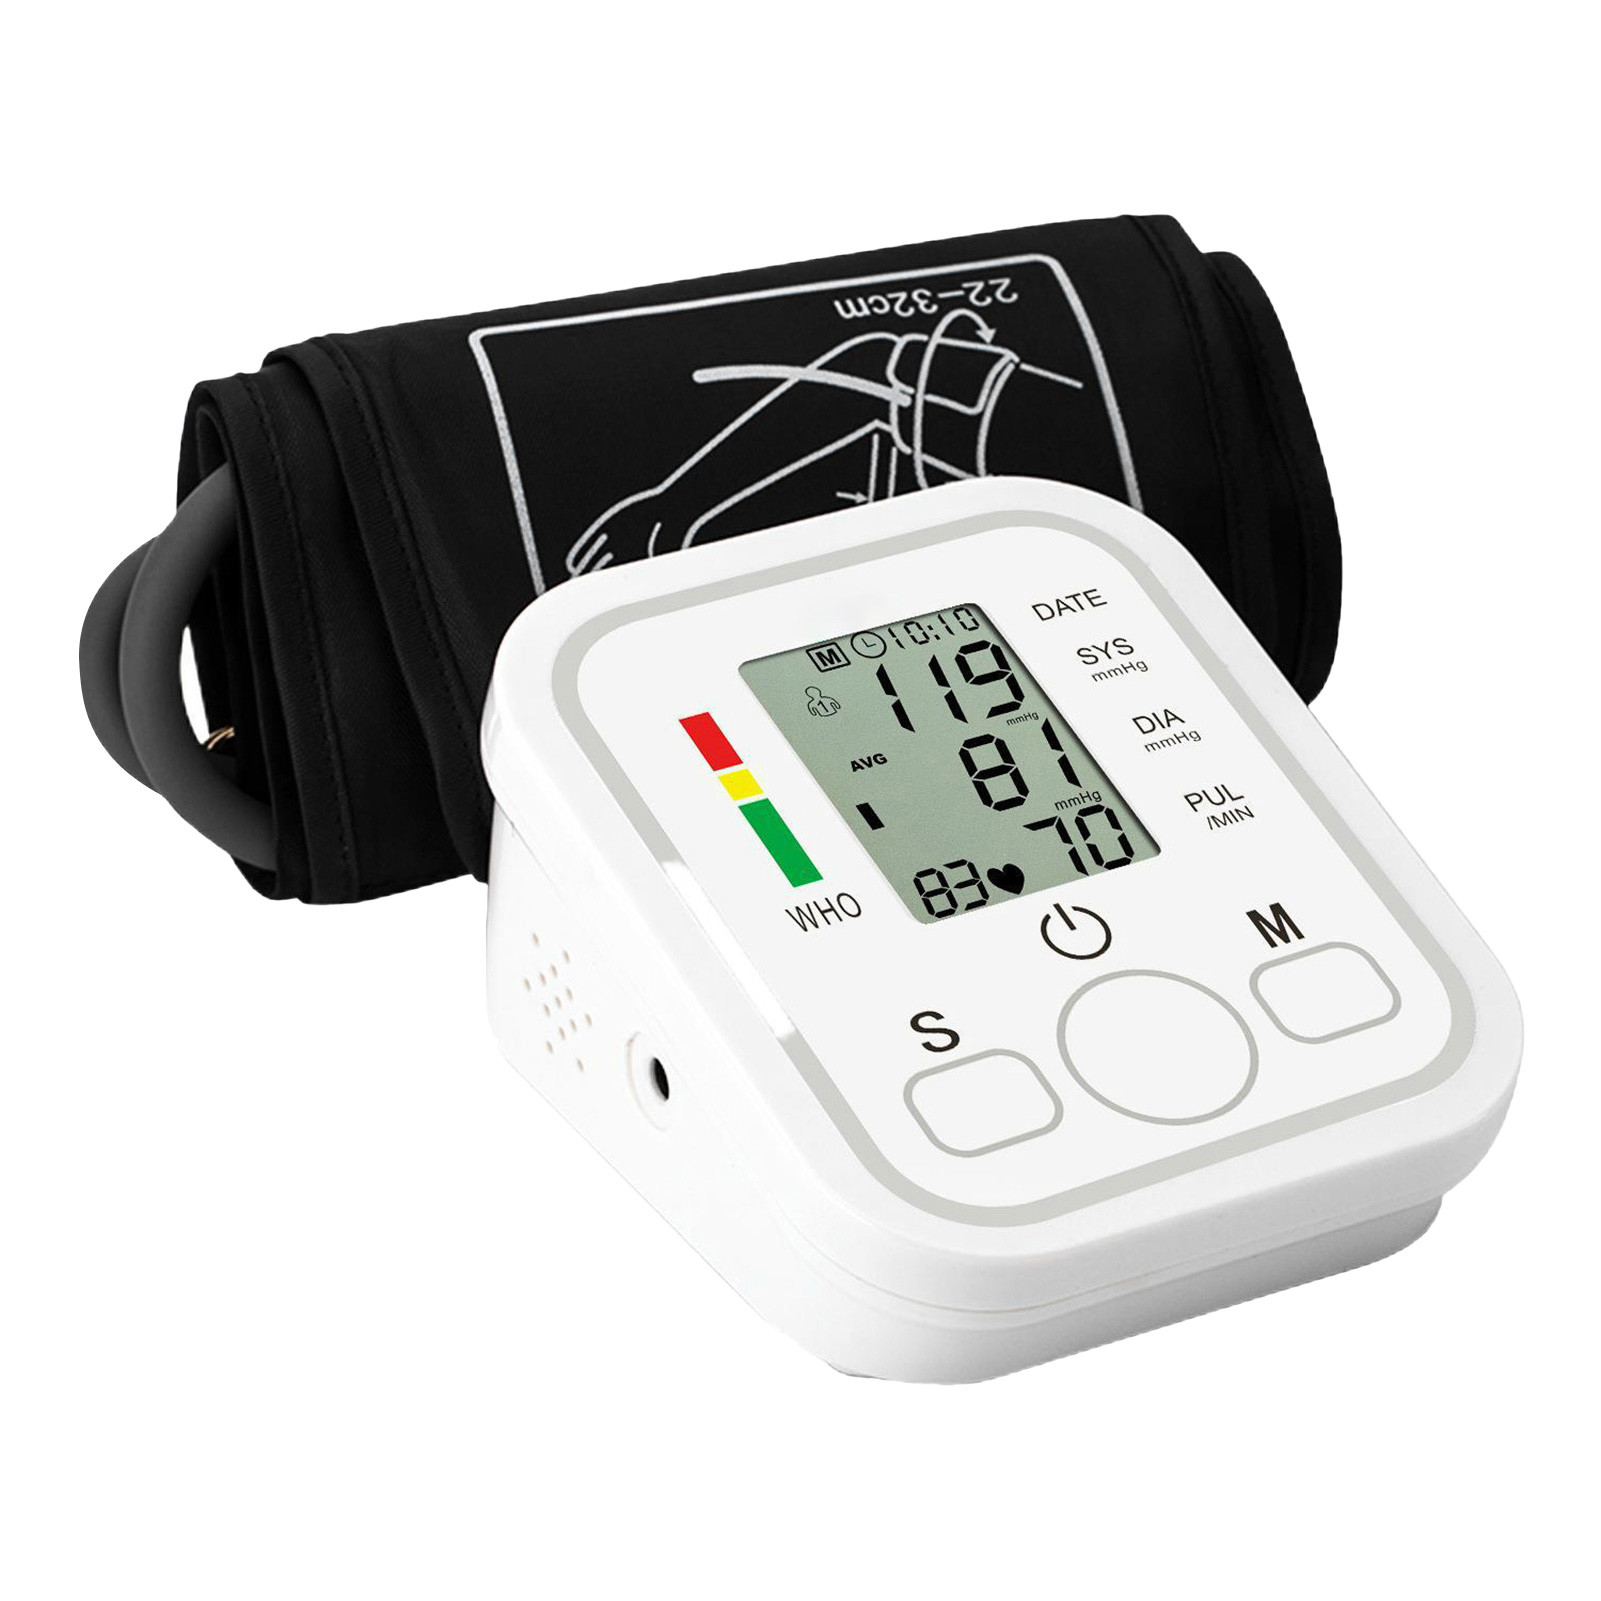 Este medidor de pressão arterial possui uma tecnologia avançada de medição, com voz inteligente que lhe transmite todas as informações do ecrã